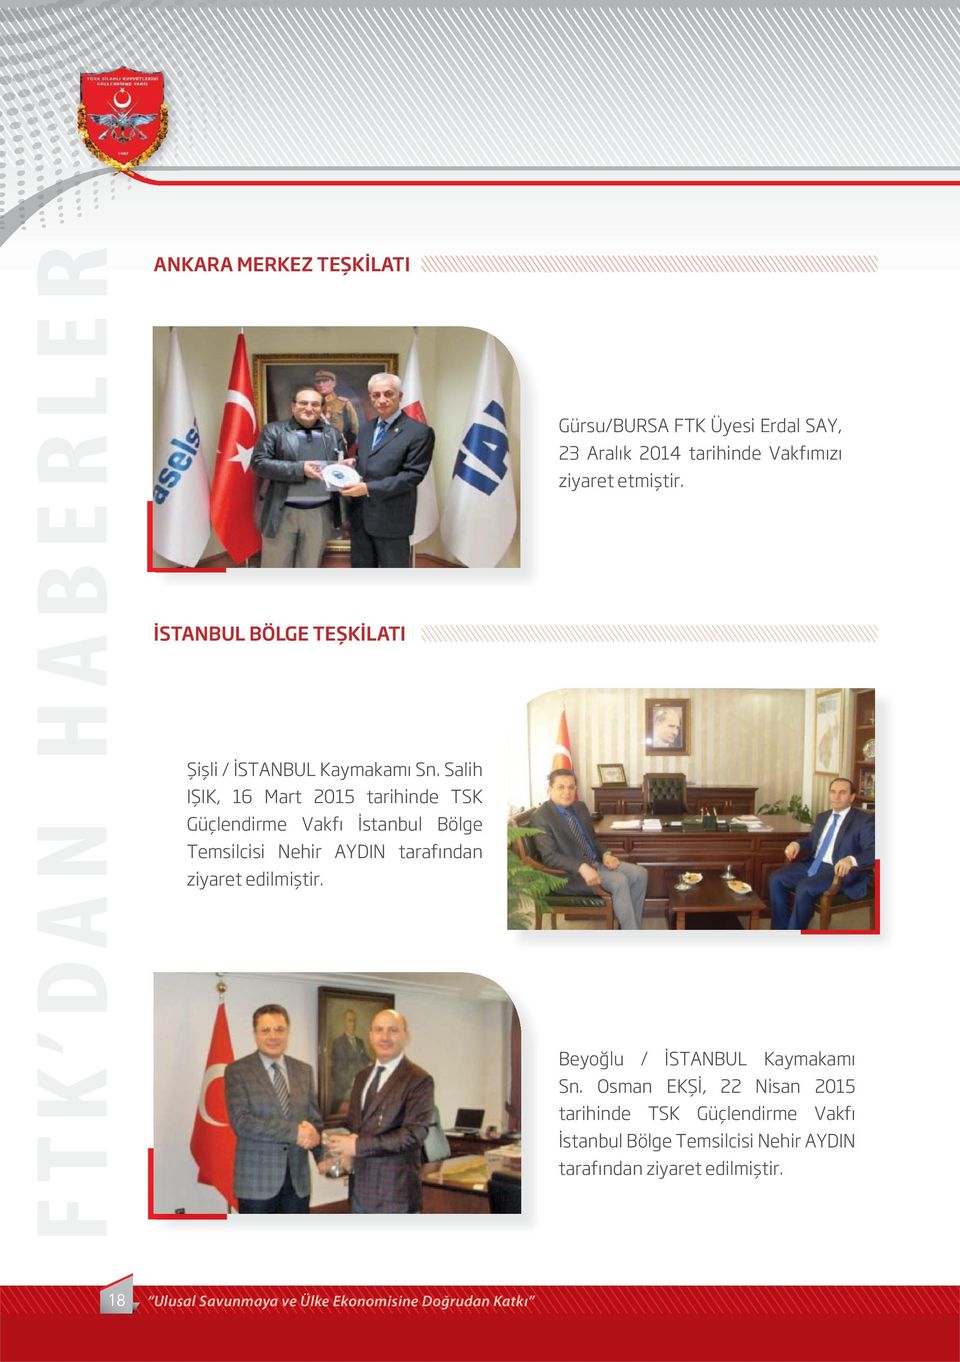 Gürsu/BURSA FTK Üyesi Erdal SAY, 23 Aralık 2014 tarihinde Vakfımızı ziyaret etmiştir. Beyoğlu / İSTANBUL Kaymakamı Sn.